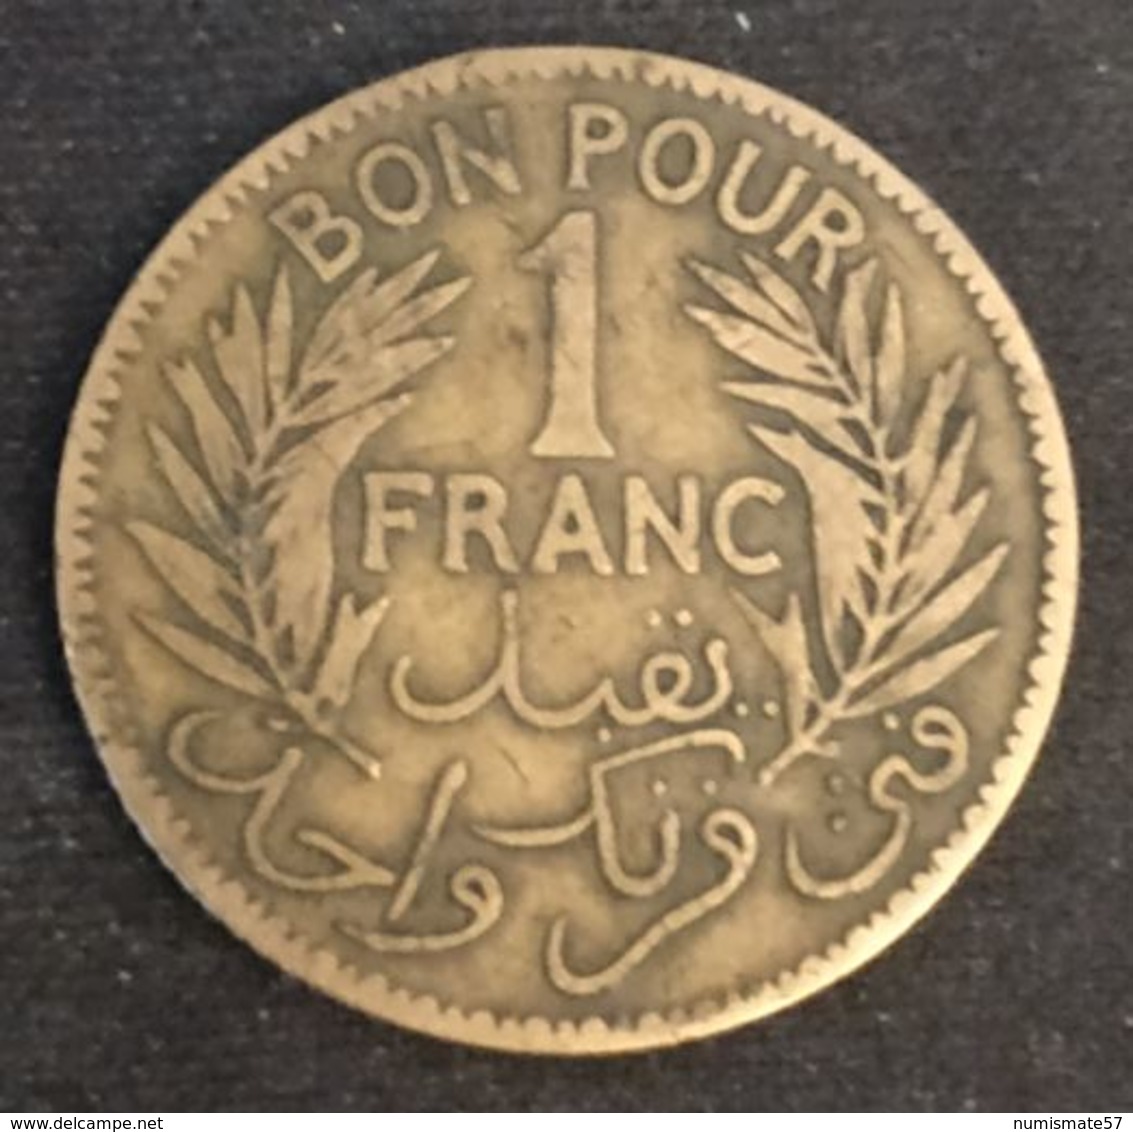 TUNISIE - TUNISIA - BON POUR 1 FRANC 1921 - Chambre De Commerce - KM 247 - Túnez